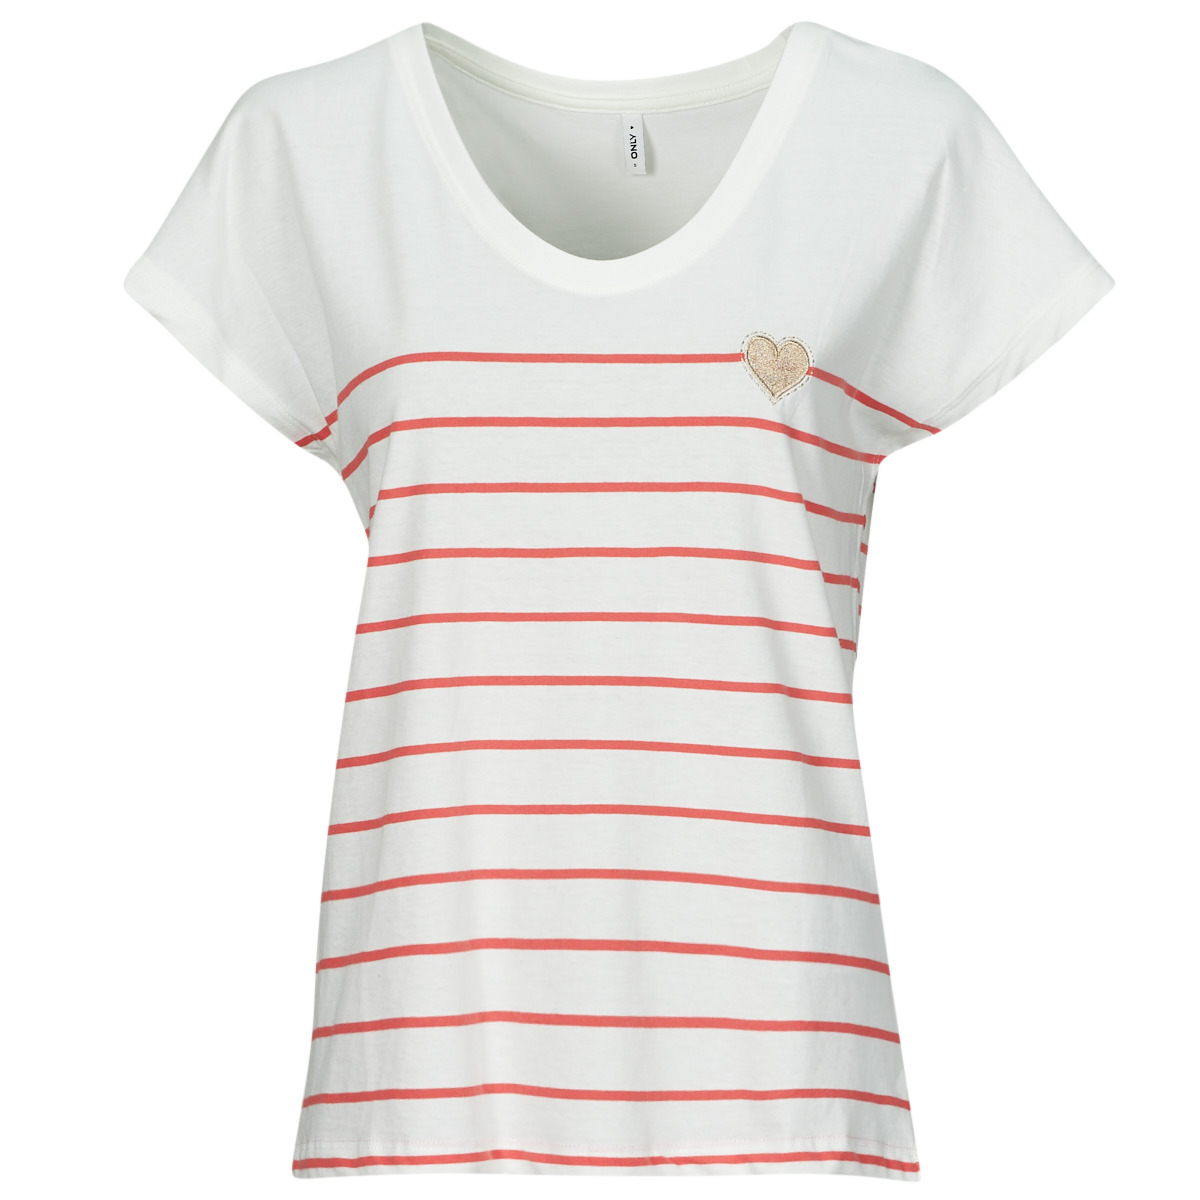 Υφασμάτινα Γυναίκα T-shirt με κοντά μανίκια Only ONLEMILY Ecru / Red